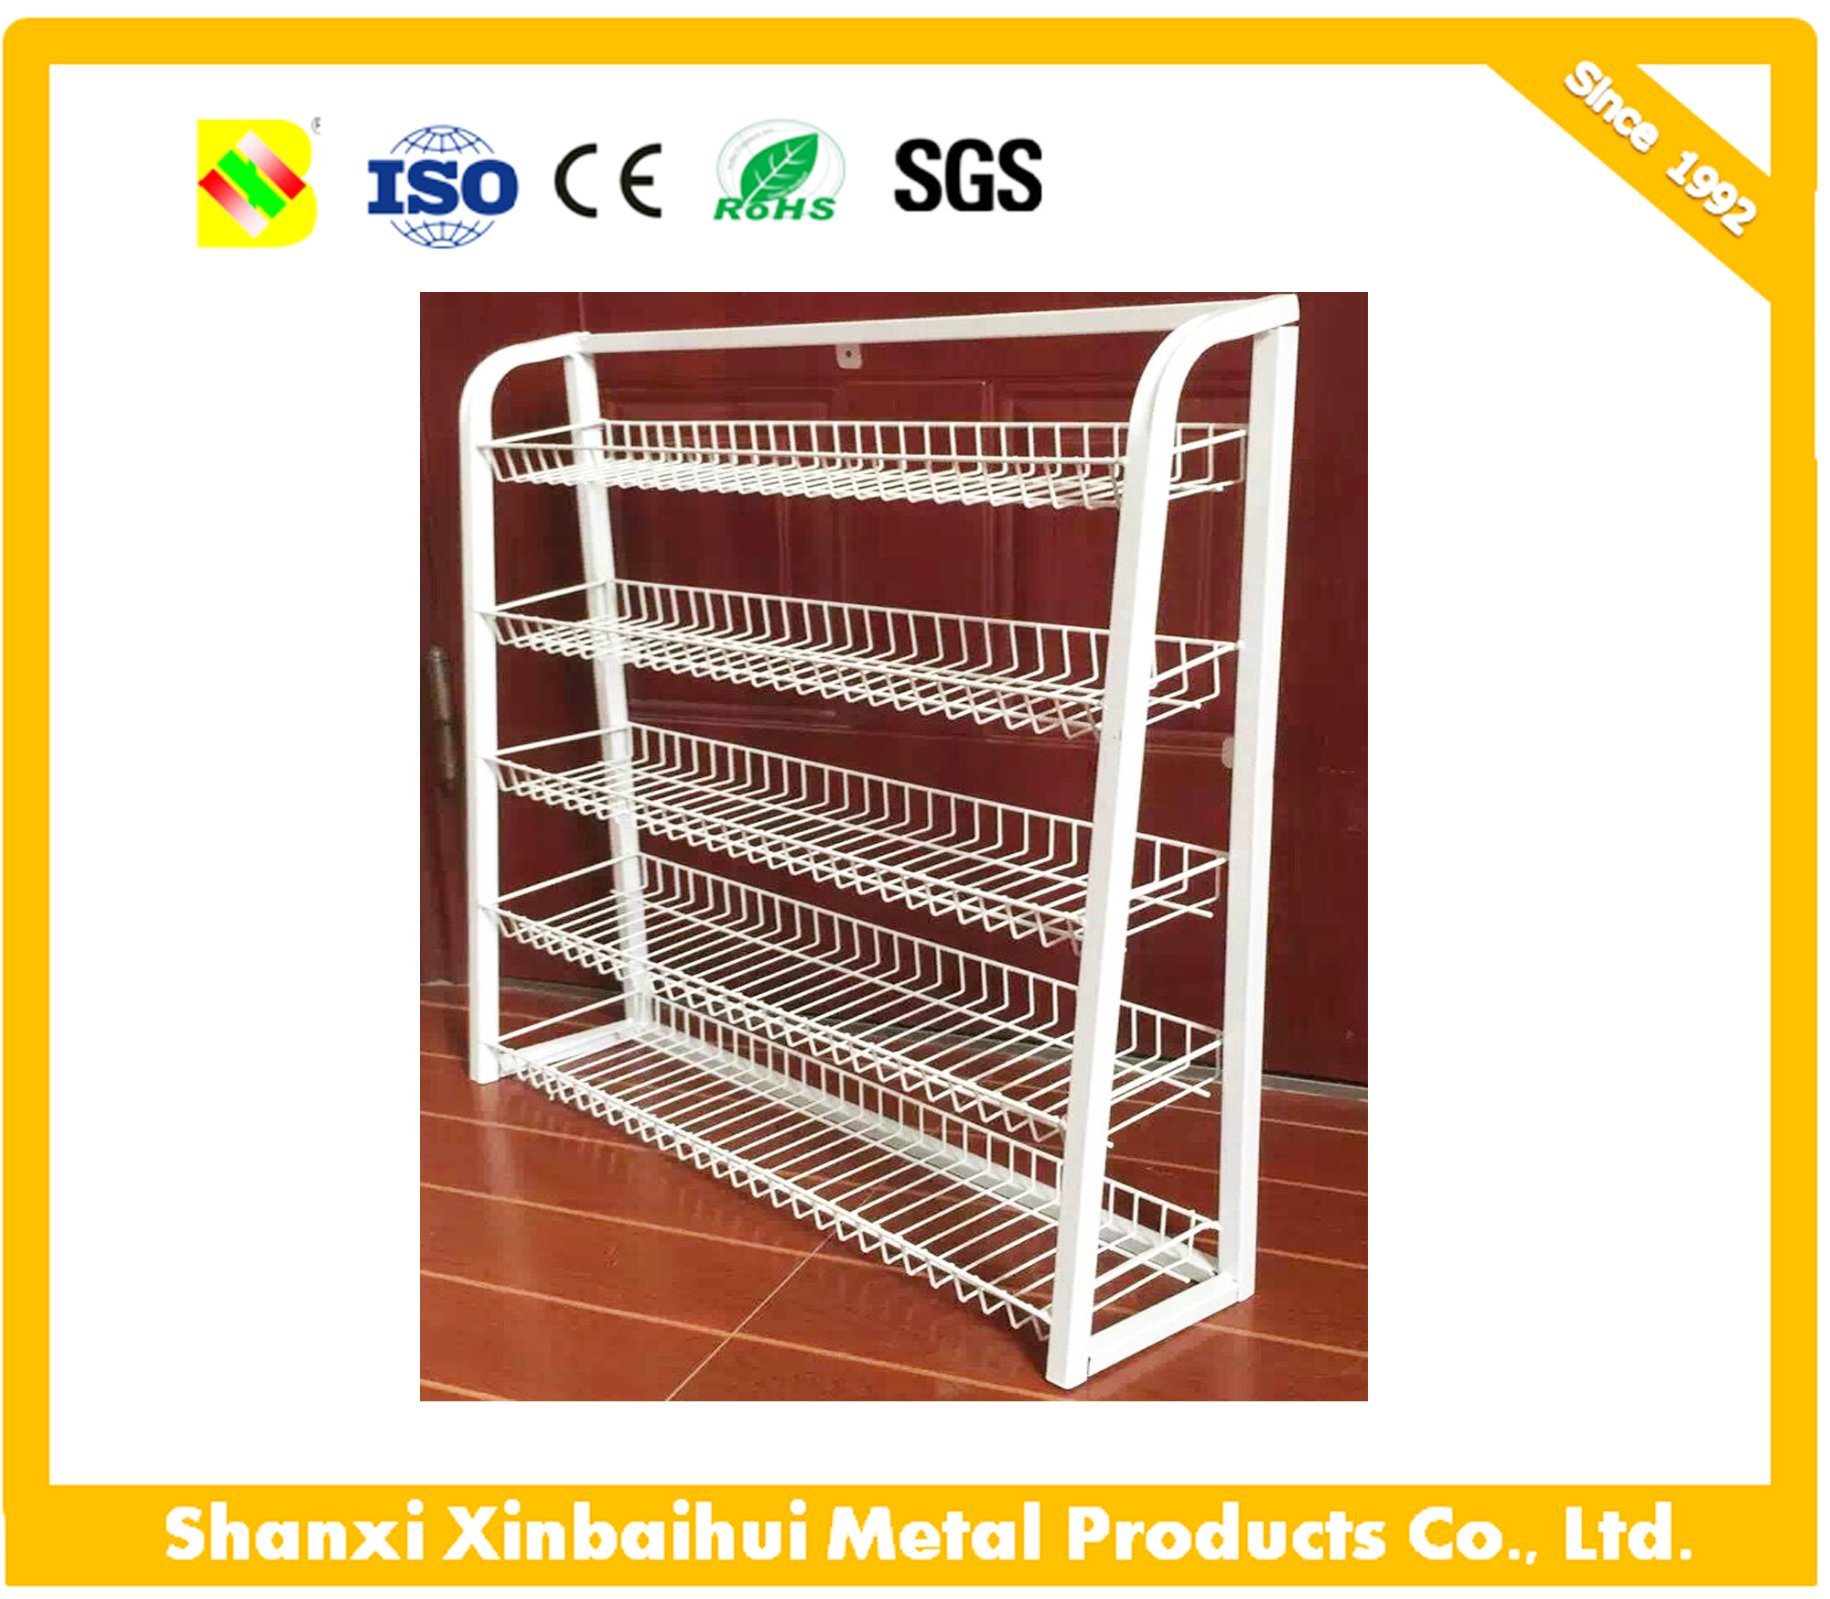 /proimages/2f0j00pZrEYwHKEAgn/heavy-duty-storage-shelf-adjustable-wire-shelving-steel-rack.jpg